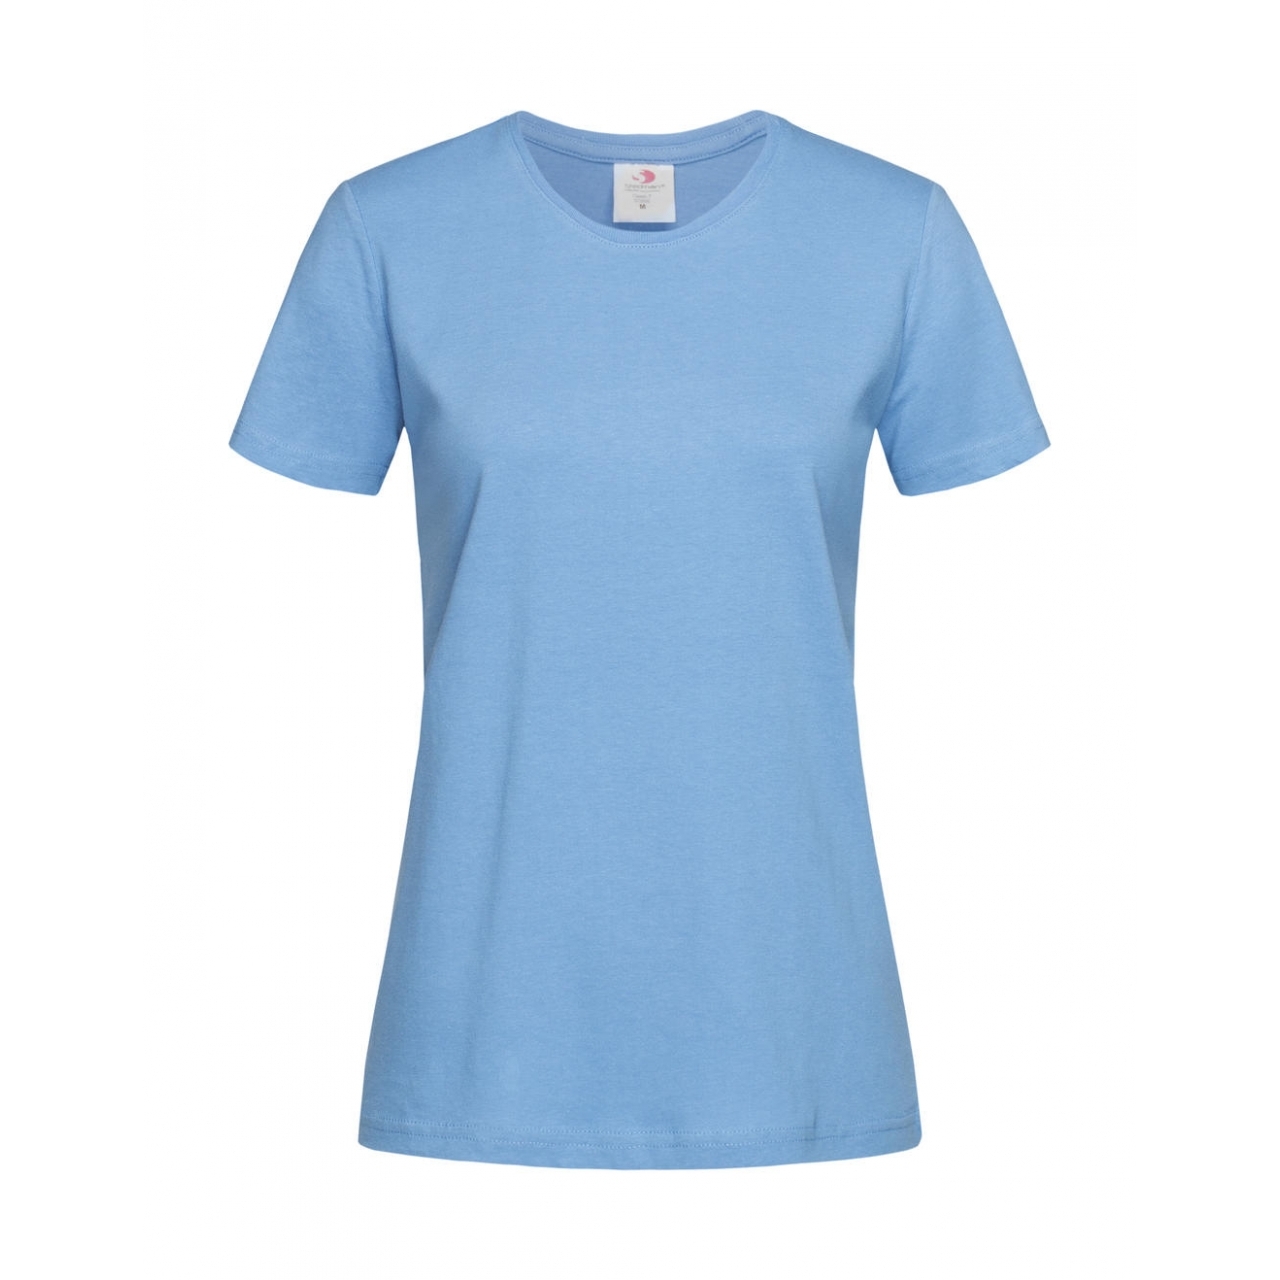 Tričko dámské Stedman Fitted s kulatým výstřihem - světle modré, L